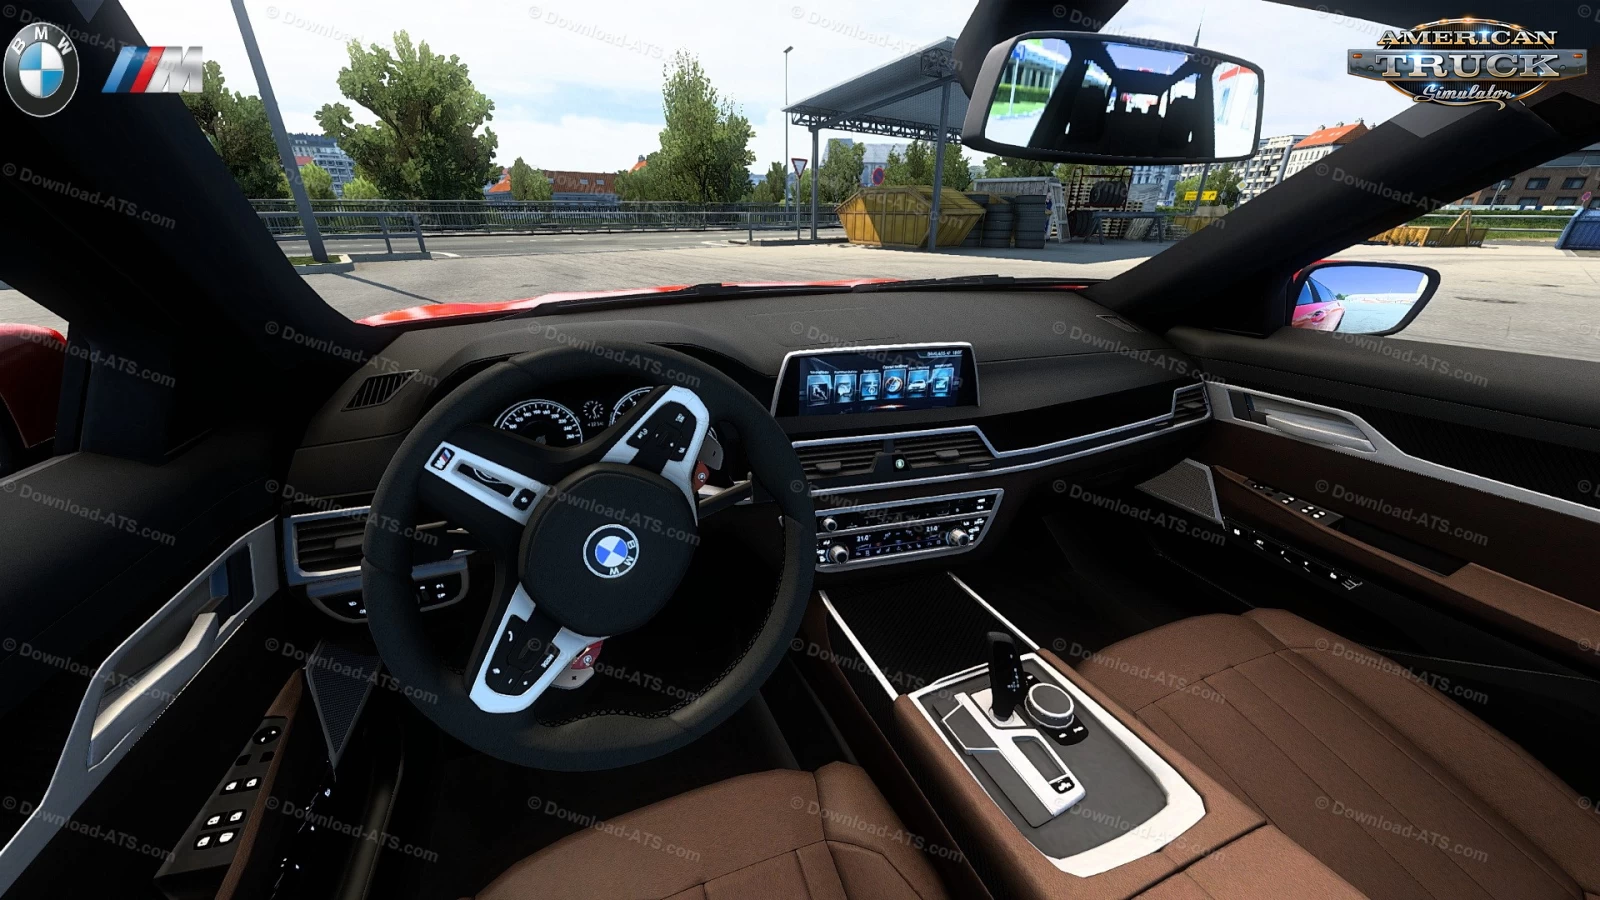 BMW G21 Touring + Interior v1.5 (1.45.x) for ATS